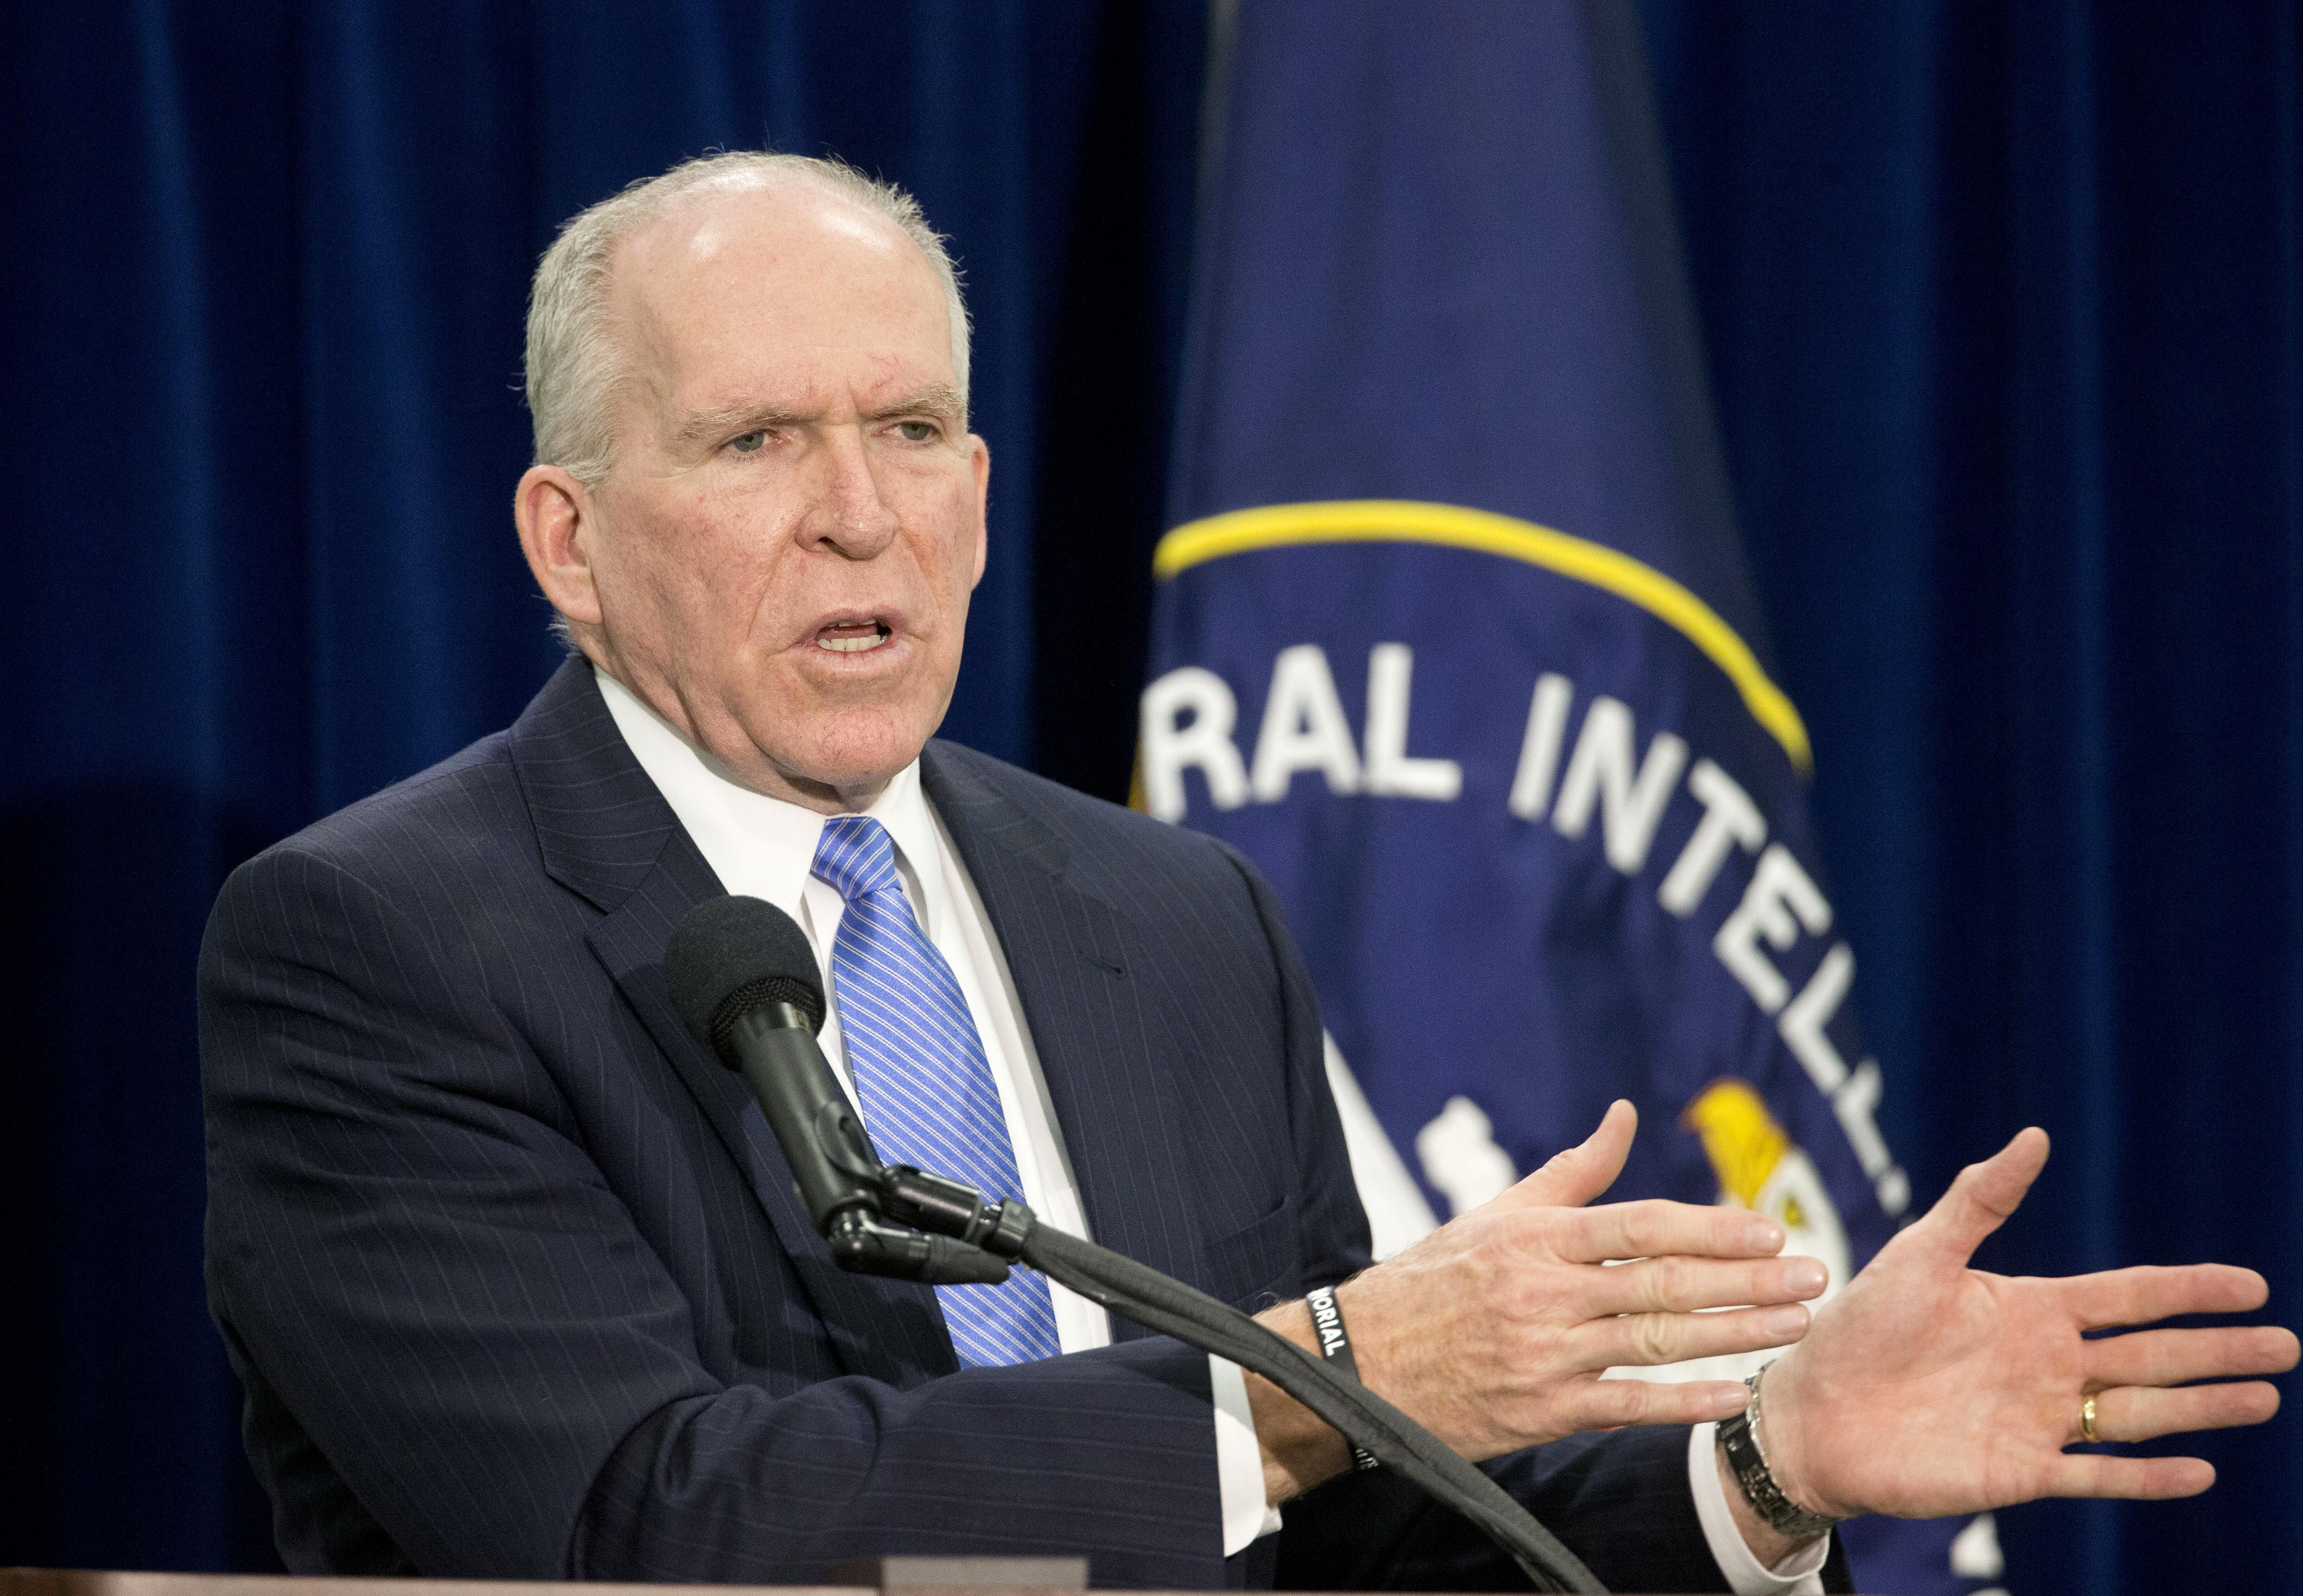  Jefe de la CIA rechazará uso de tortura aunque sea una orden presidencial